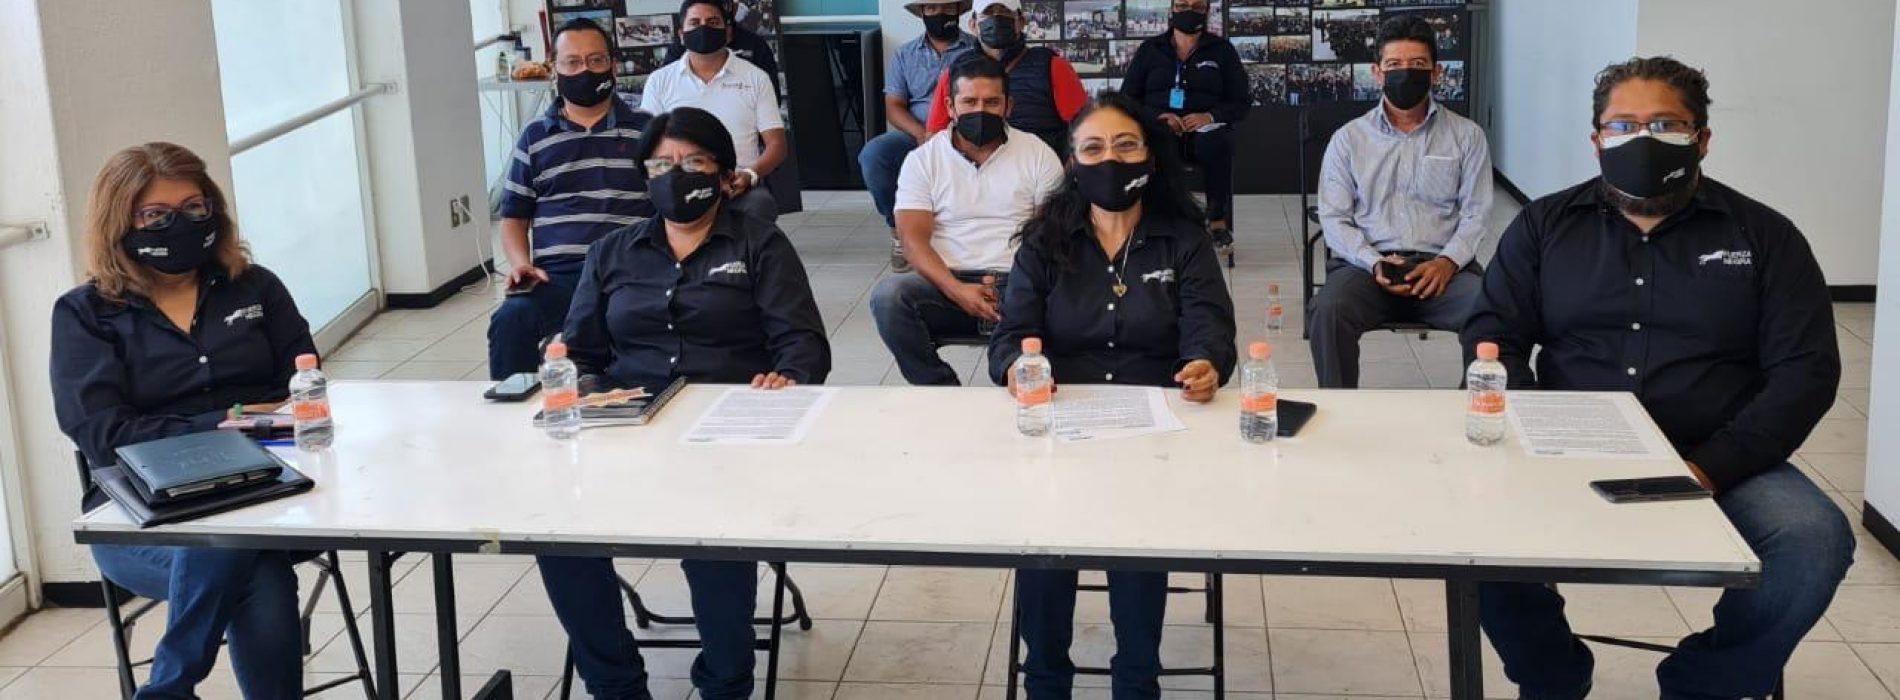 Aprueban en Oaxaca prórroga de mandato del Comité Ejecutivo del sindicato de trabajadores de los poderes del estado: Trabajadores de base pertenecientes al grupo Fuerza Negra acusan ilegalidad